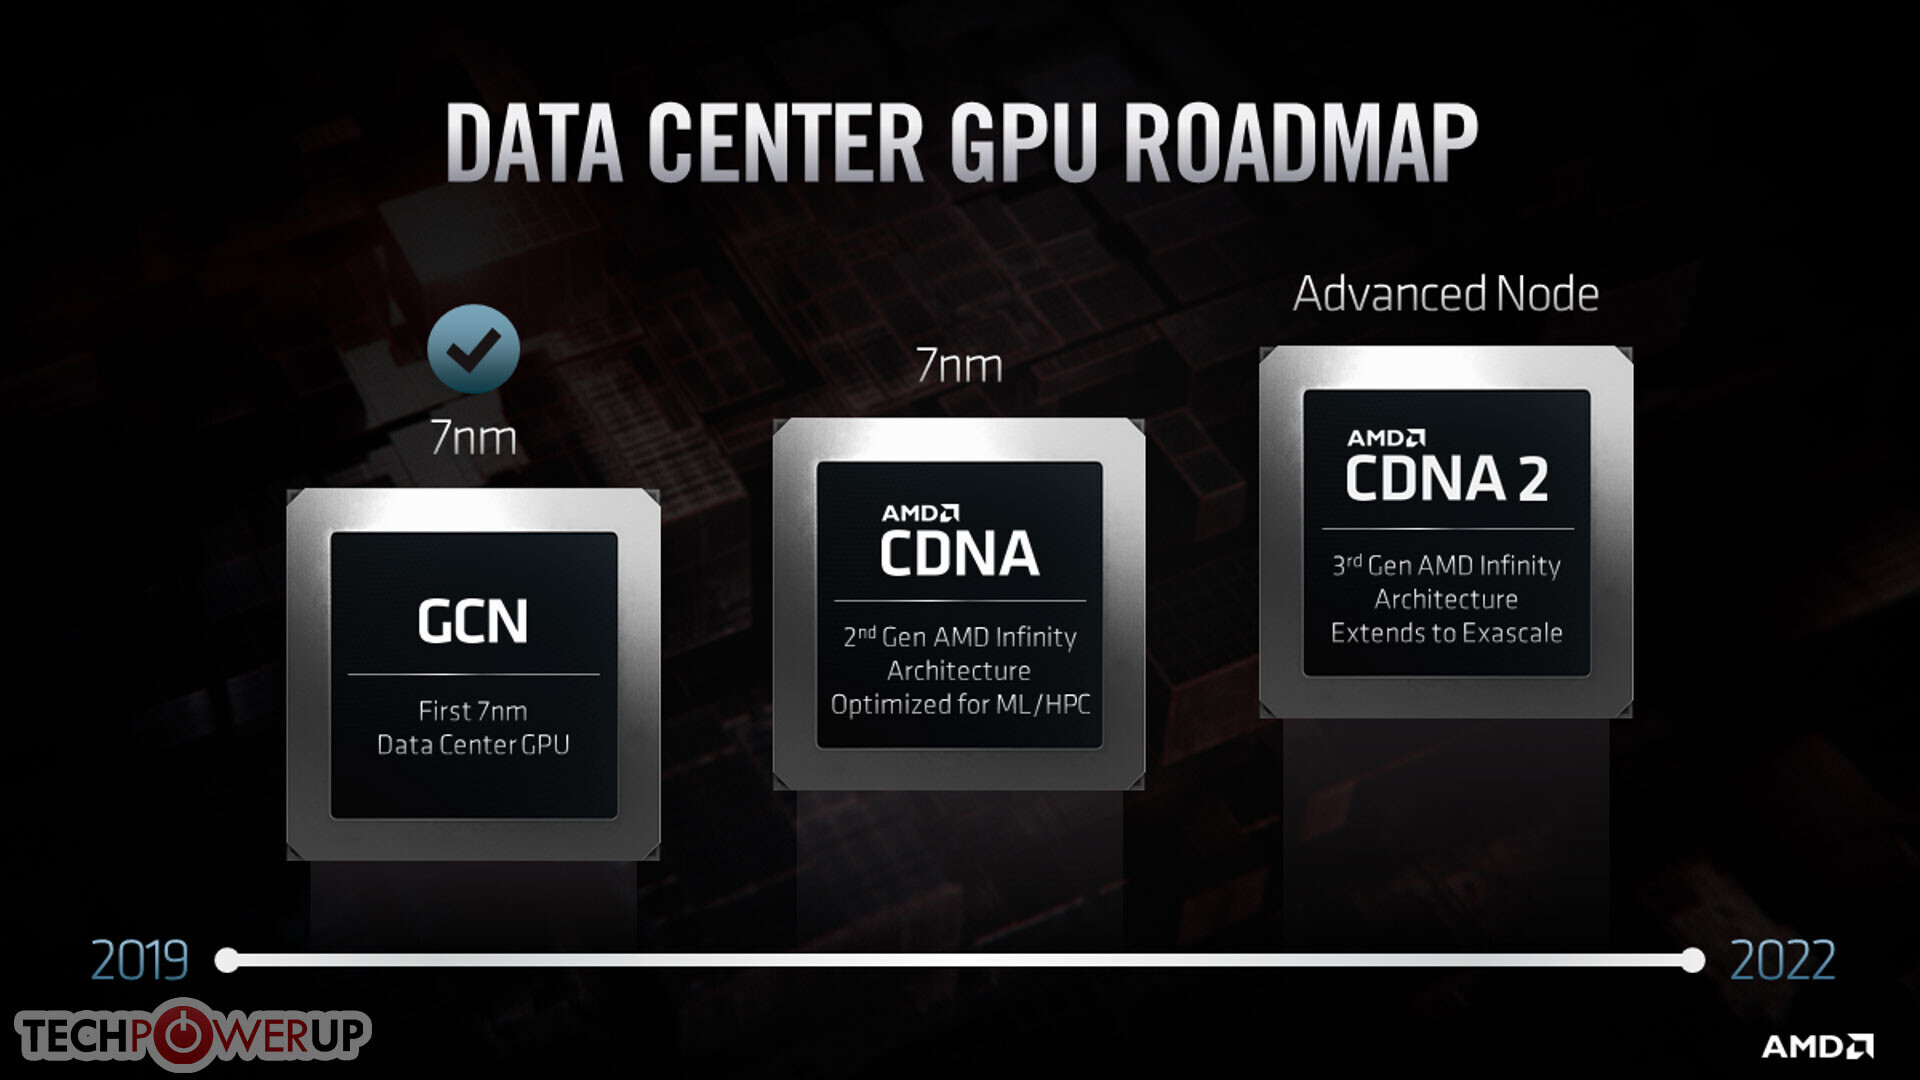 AMD’den önemli hamle: Sunucu tarafında CDNA mimarisi kullanılacak